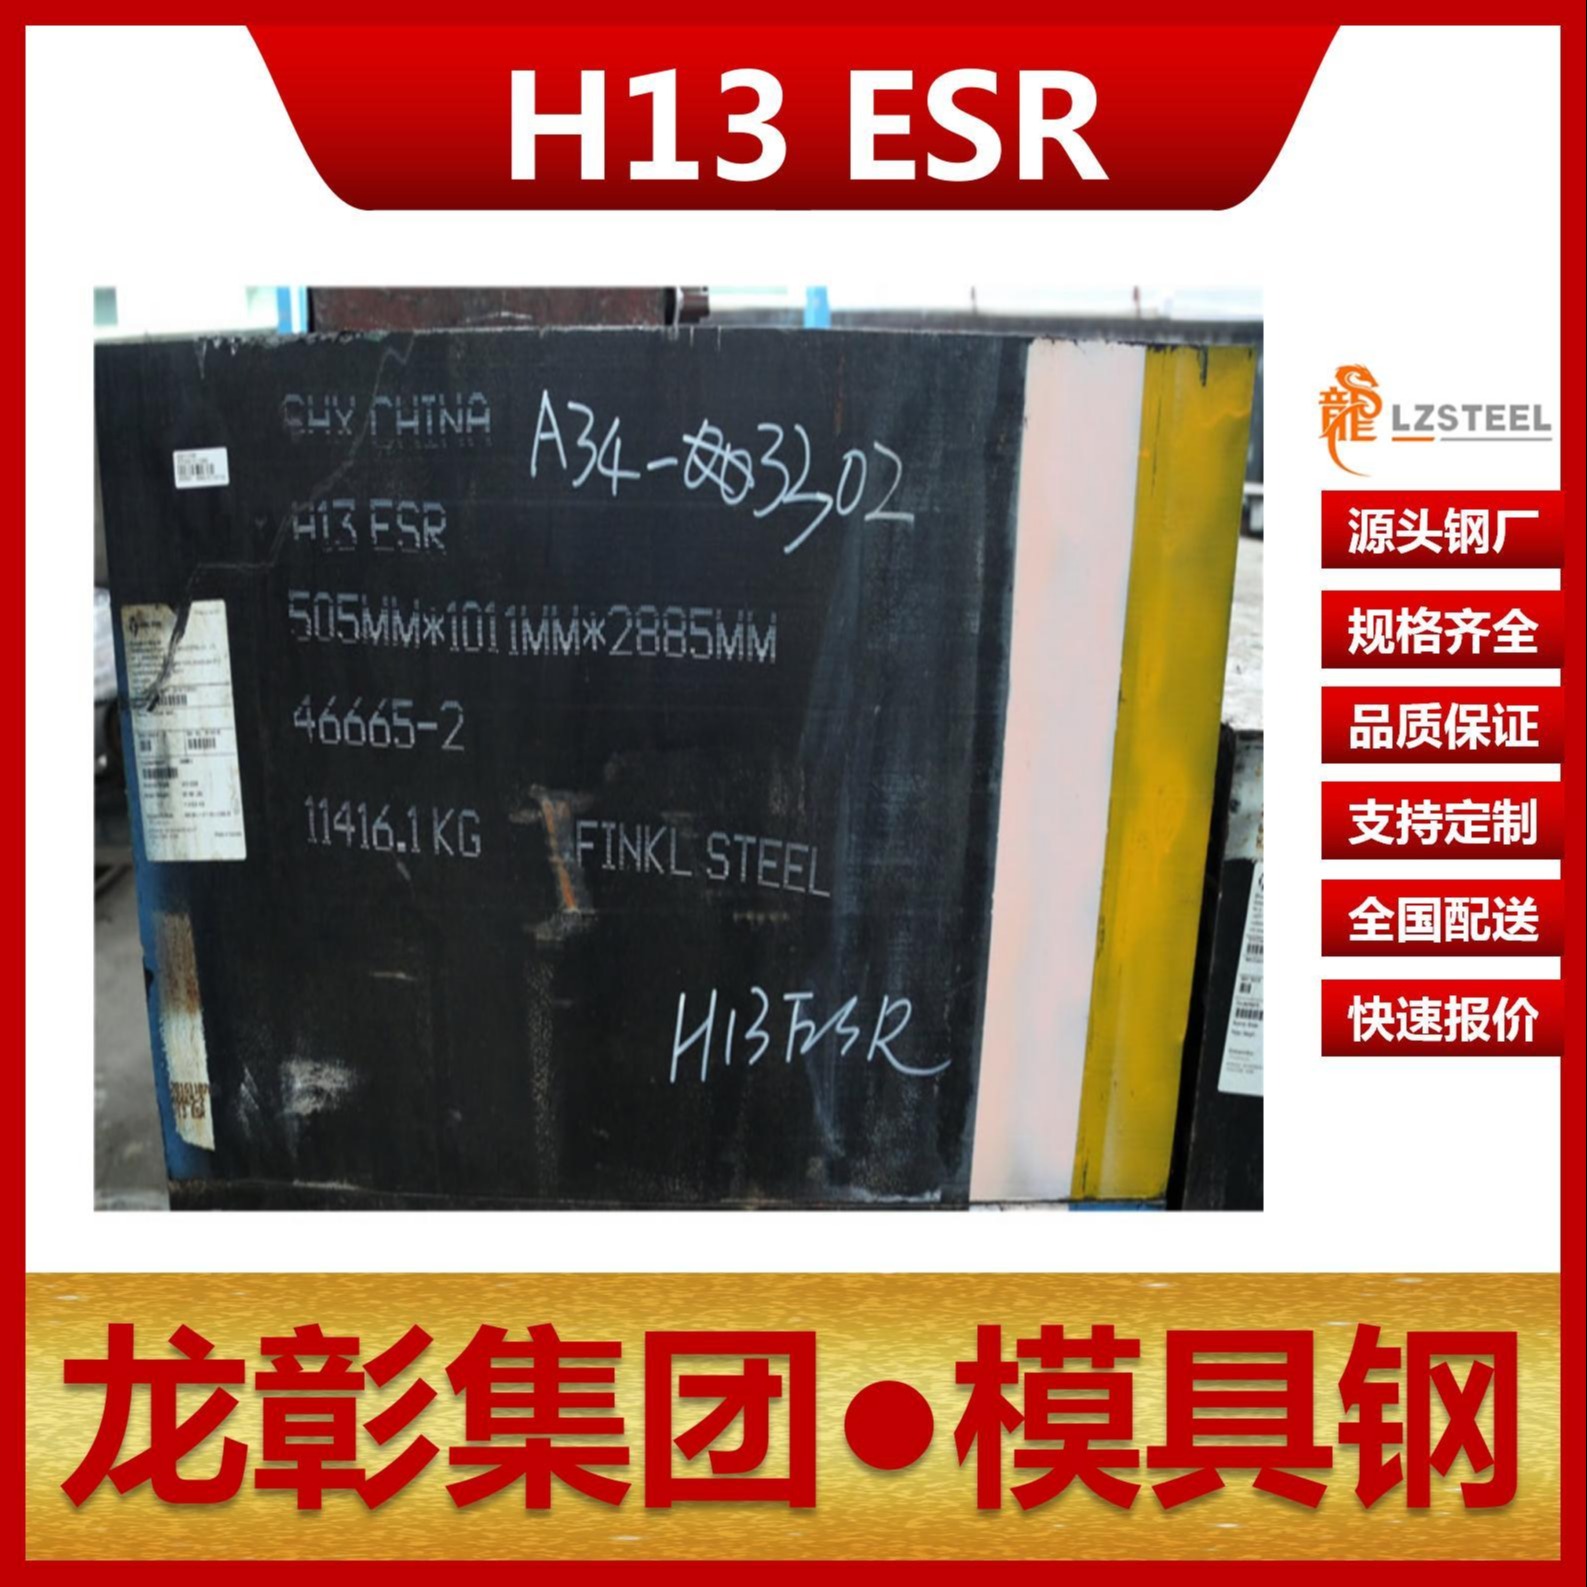 芬可乐H13 ESR模具钢现货批零 进口H13 ESR扁钢圆棒热作模具钢龙彰集团